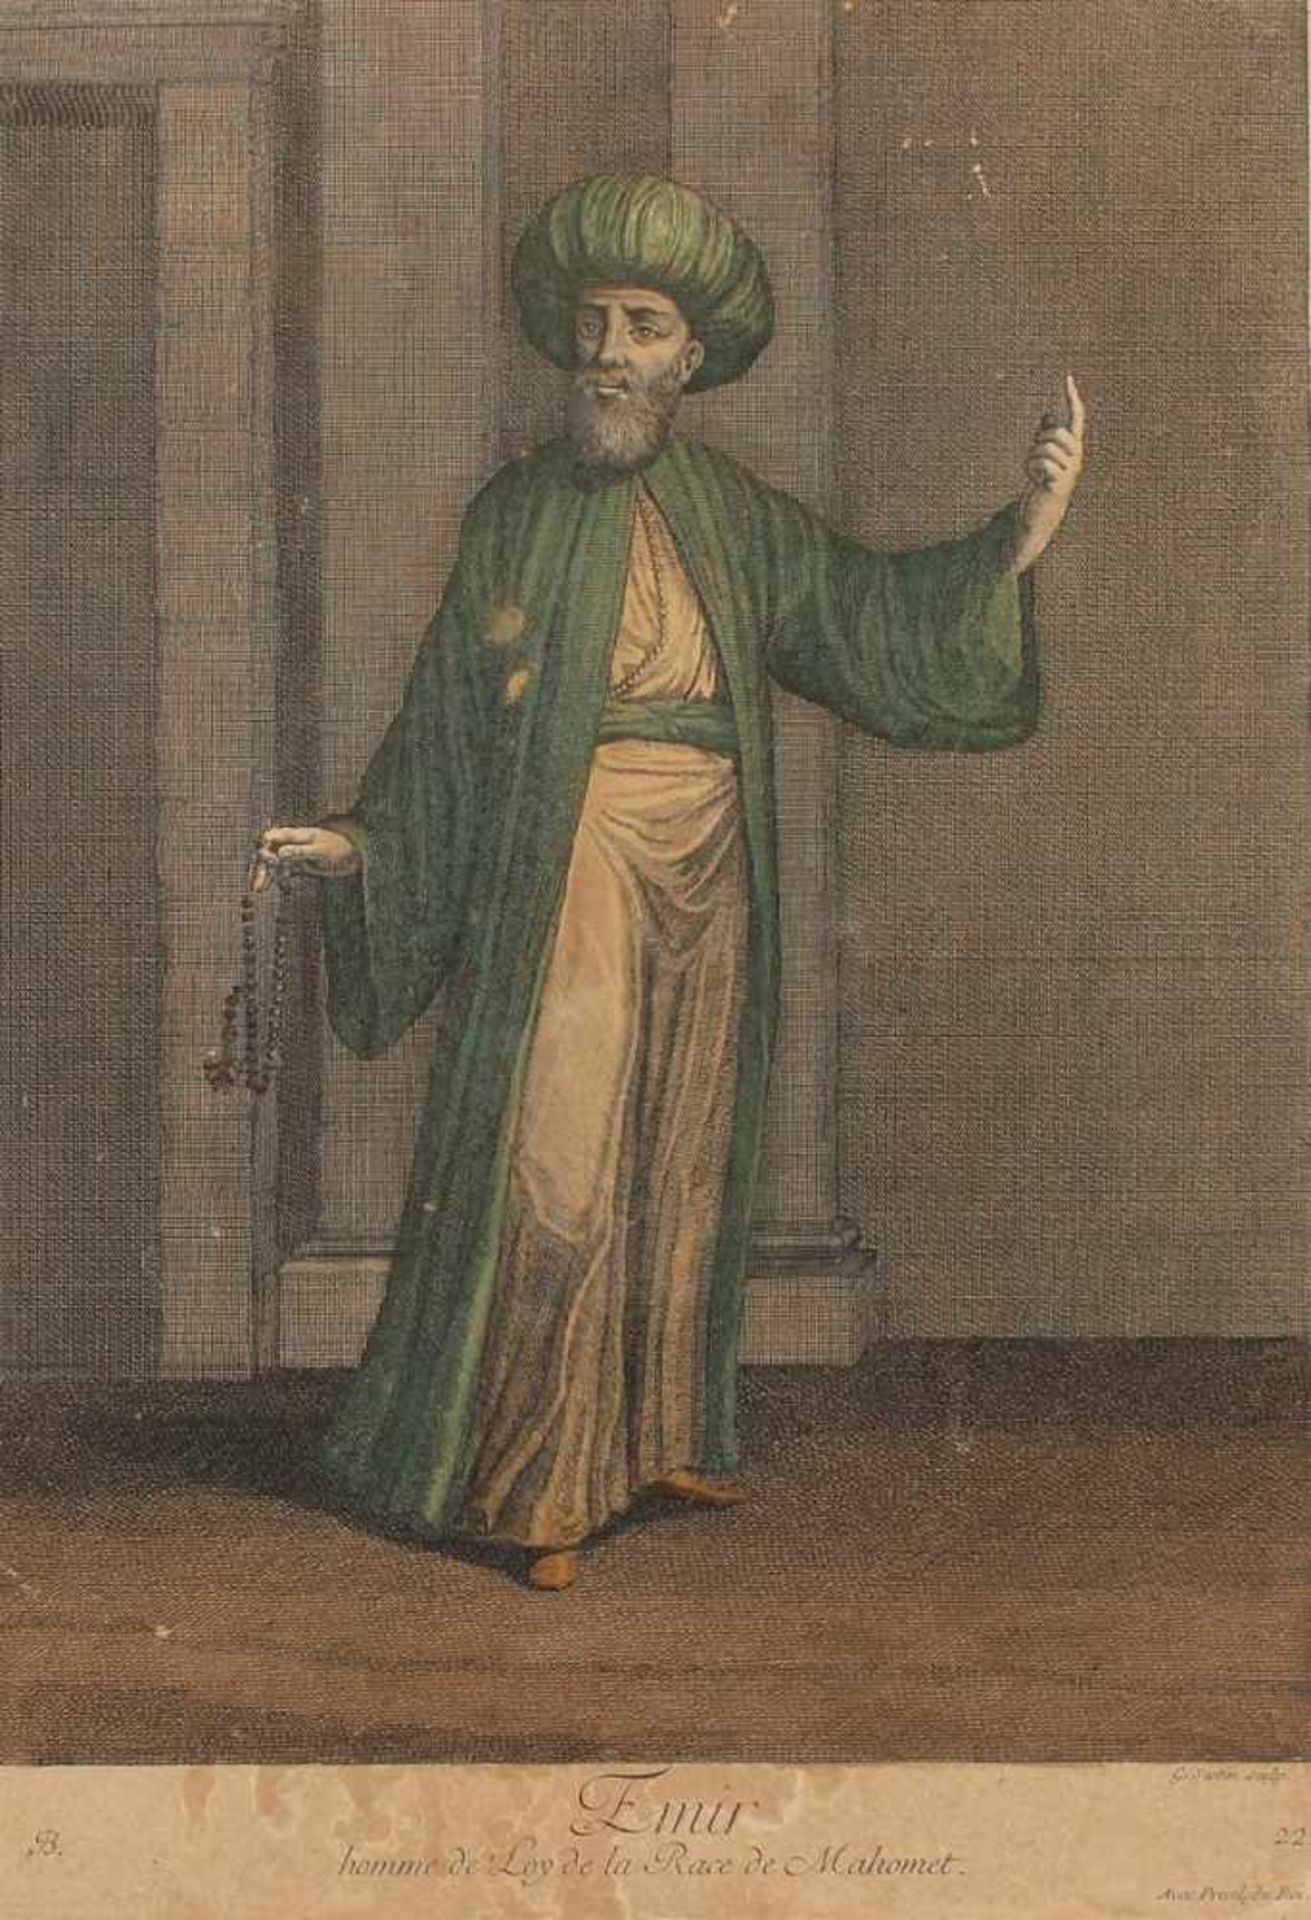 LE HAY, "Emir, homme de Loy de la Race de Mahomet", kolorierter Kupferstich, 33,5 x 24, bei Le Hay - Bild 2 aus 2